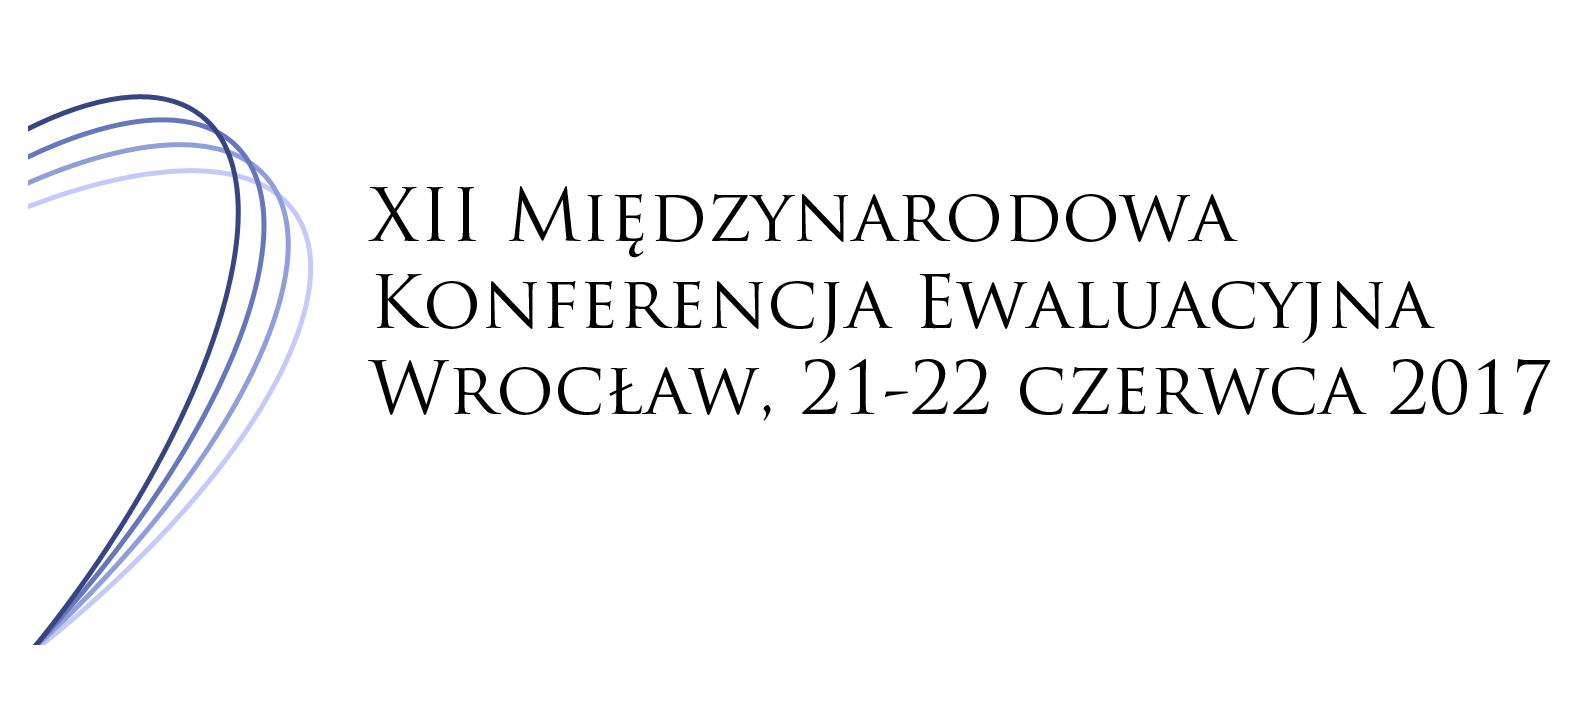 Na zdjeciu logo 12 edycji międzynarodowej konferencji ewaluacyjnej